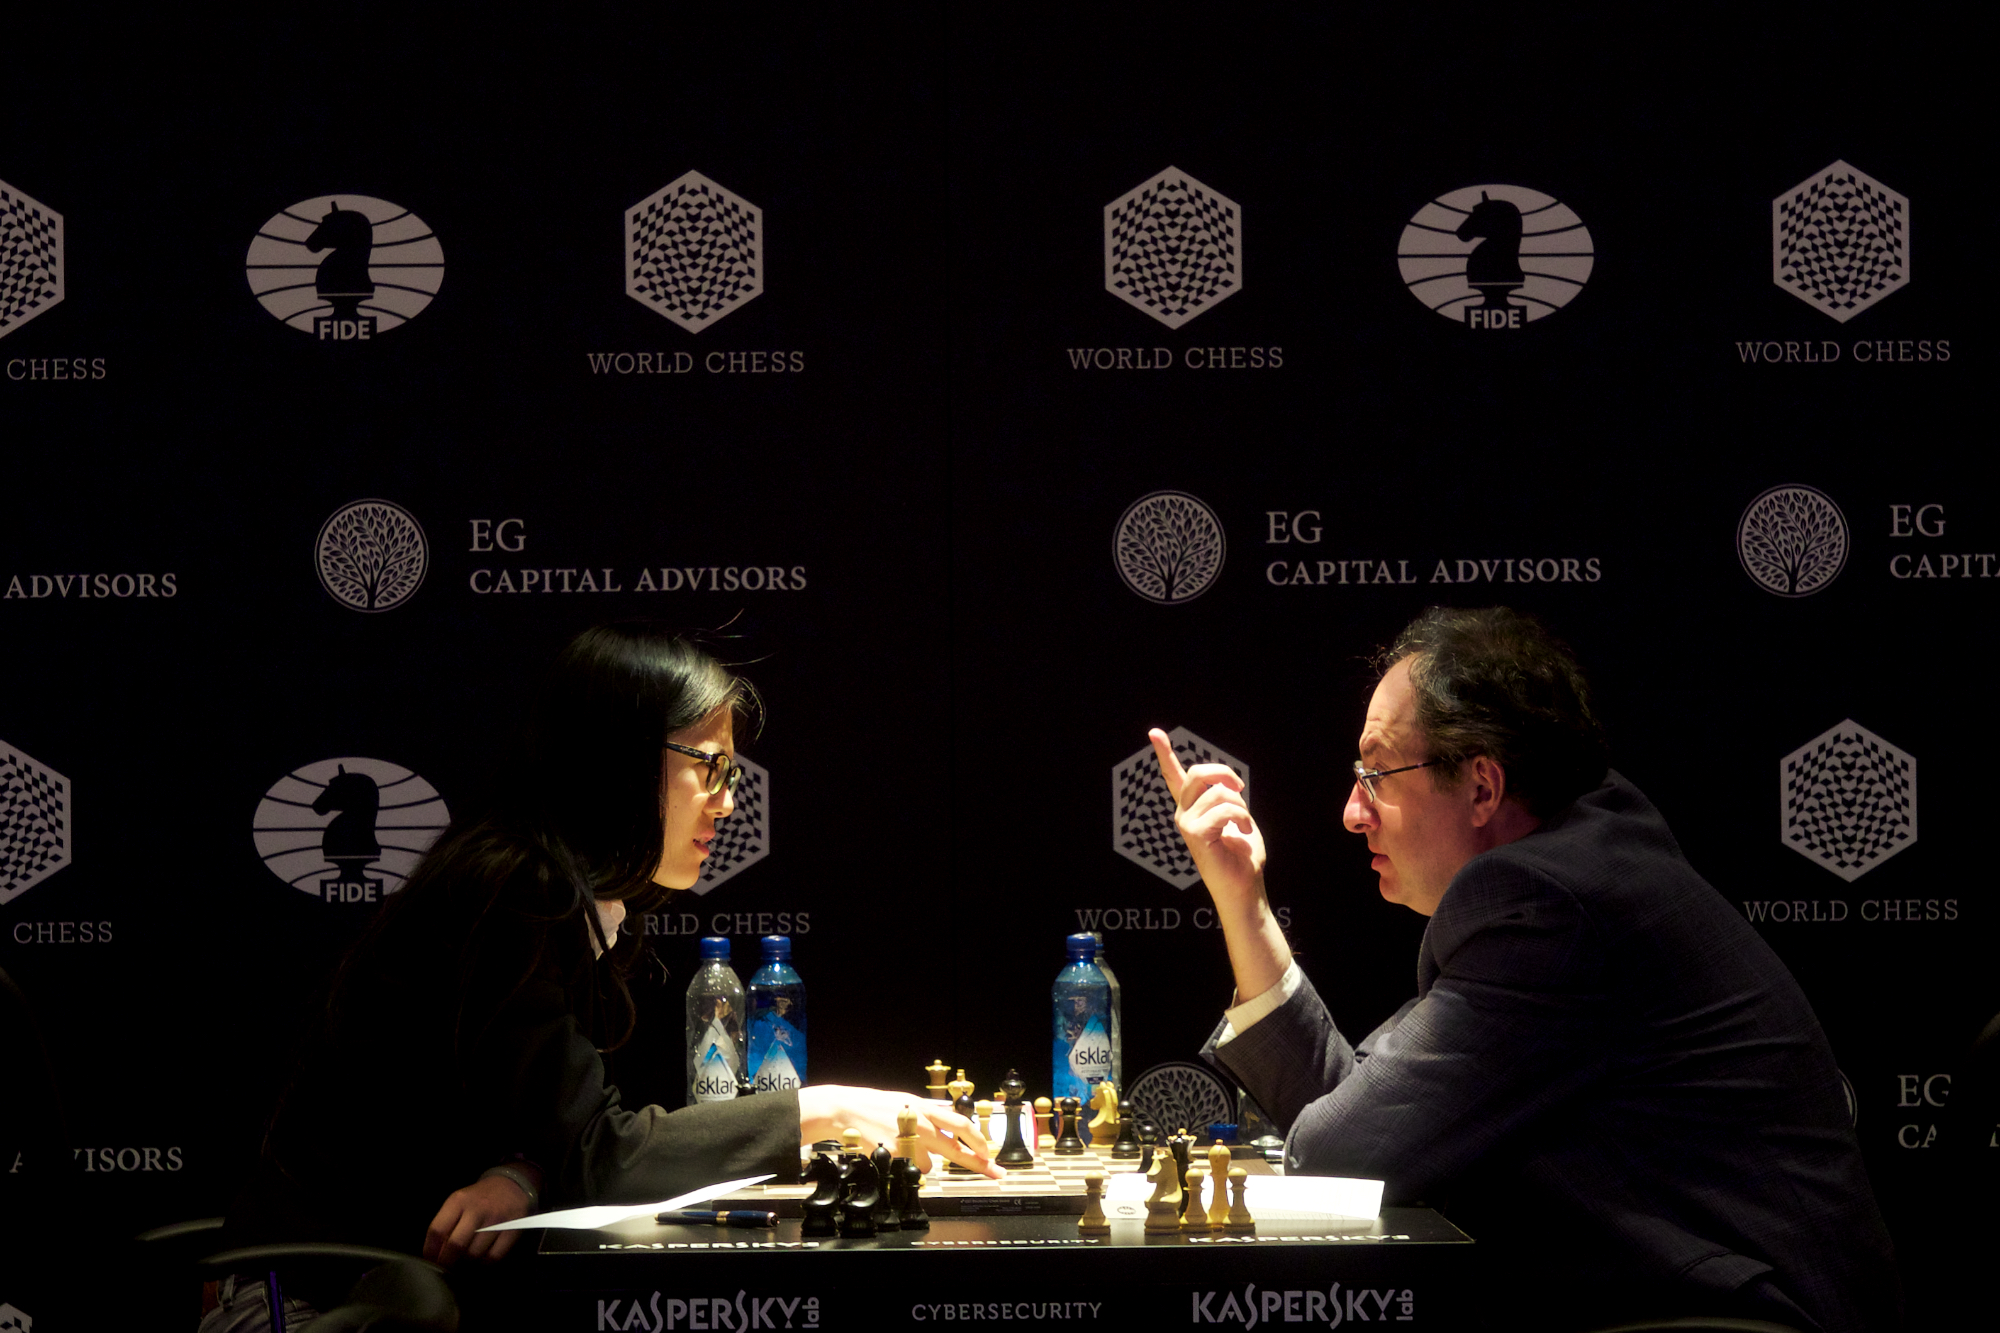 Hou Yifan @ FIDE Geneva Gran Prix / 6-13 July 2017.